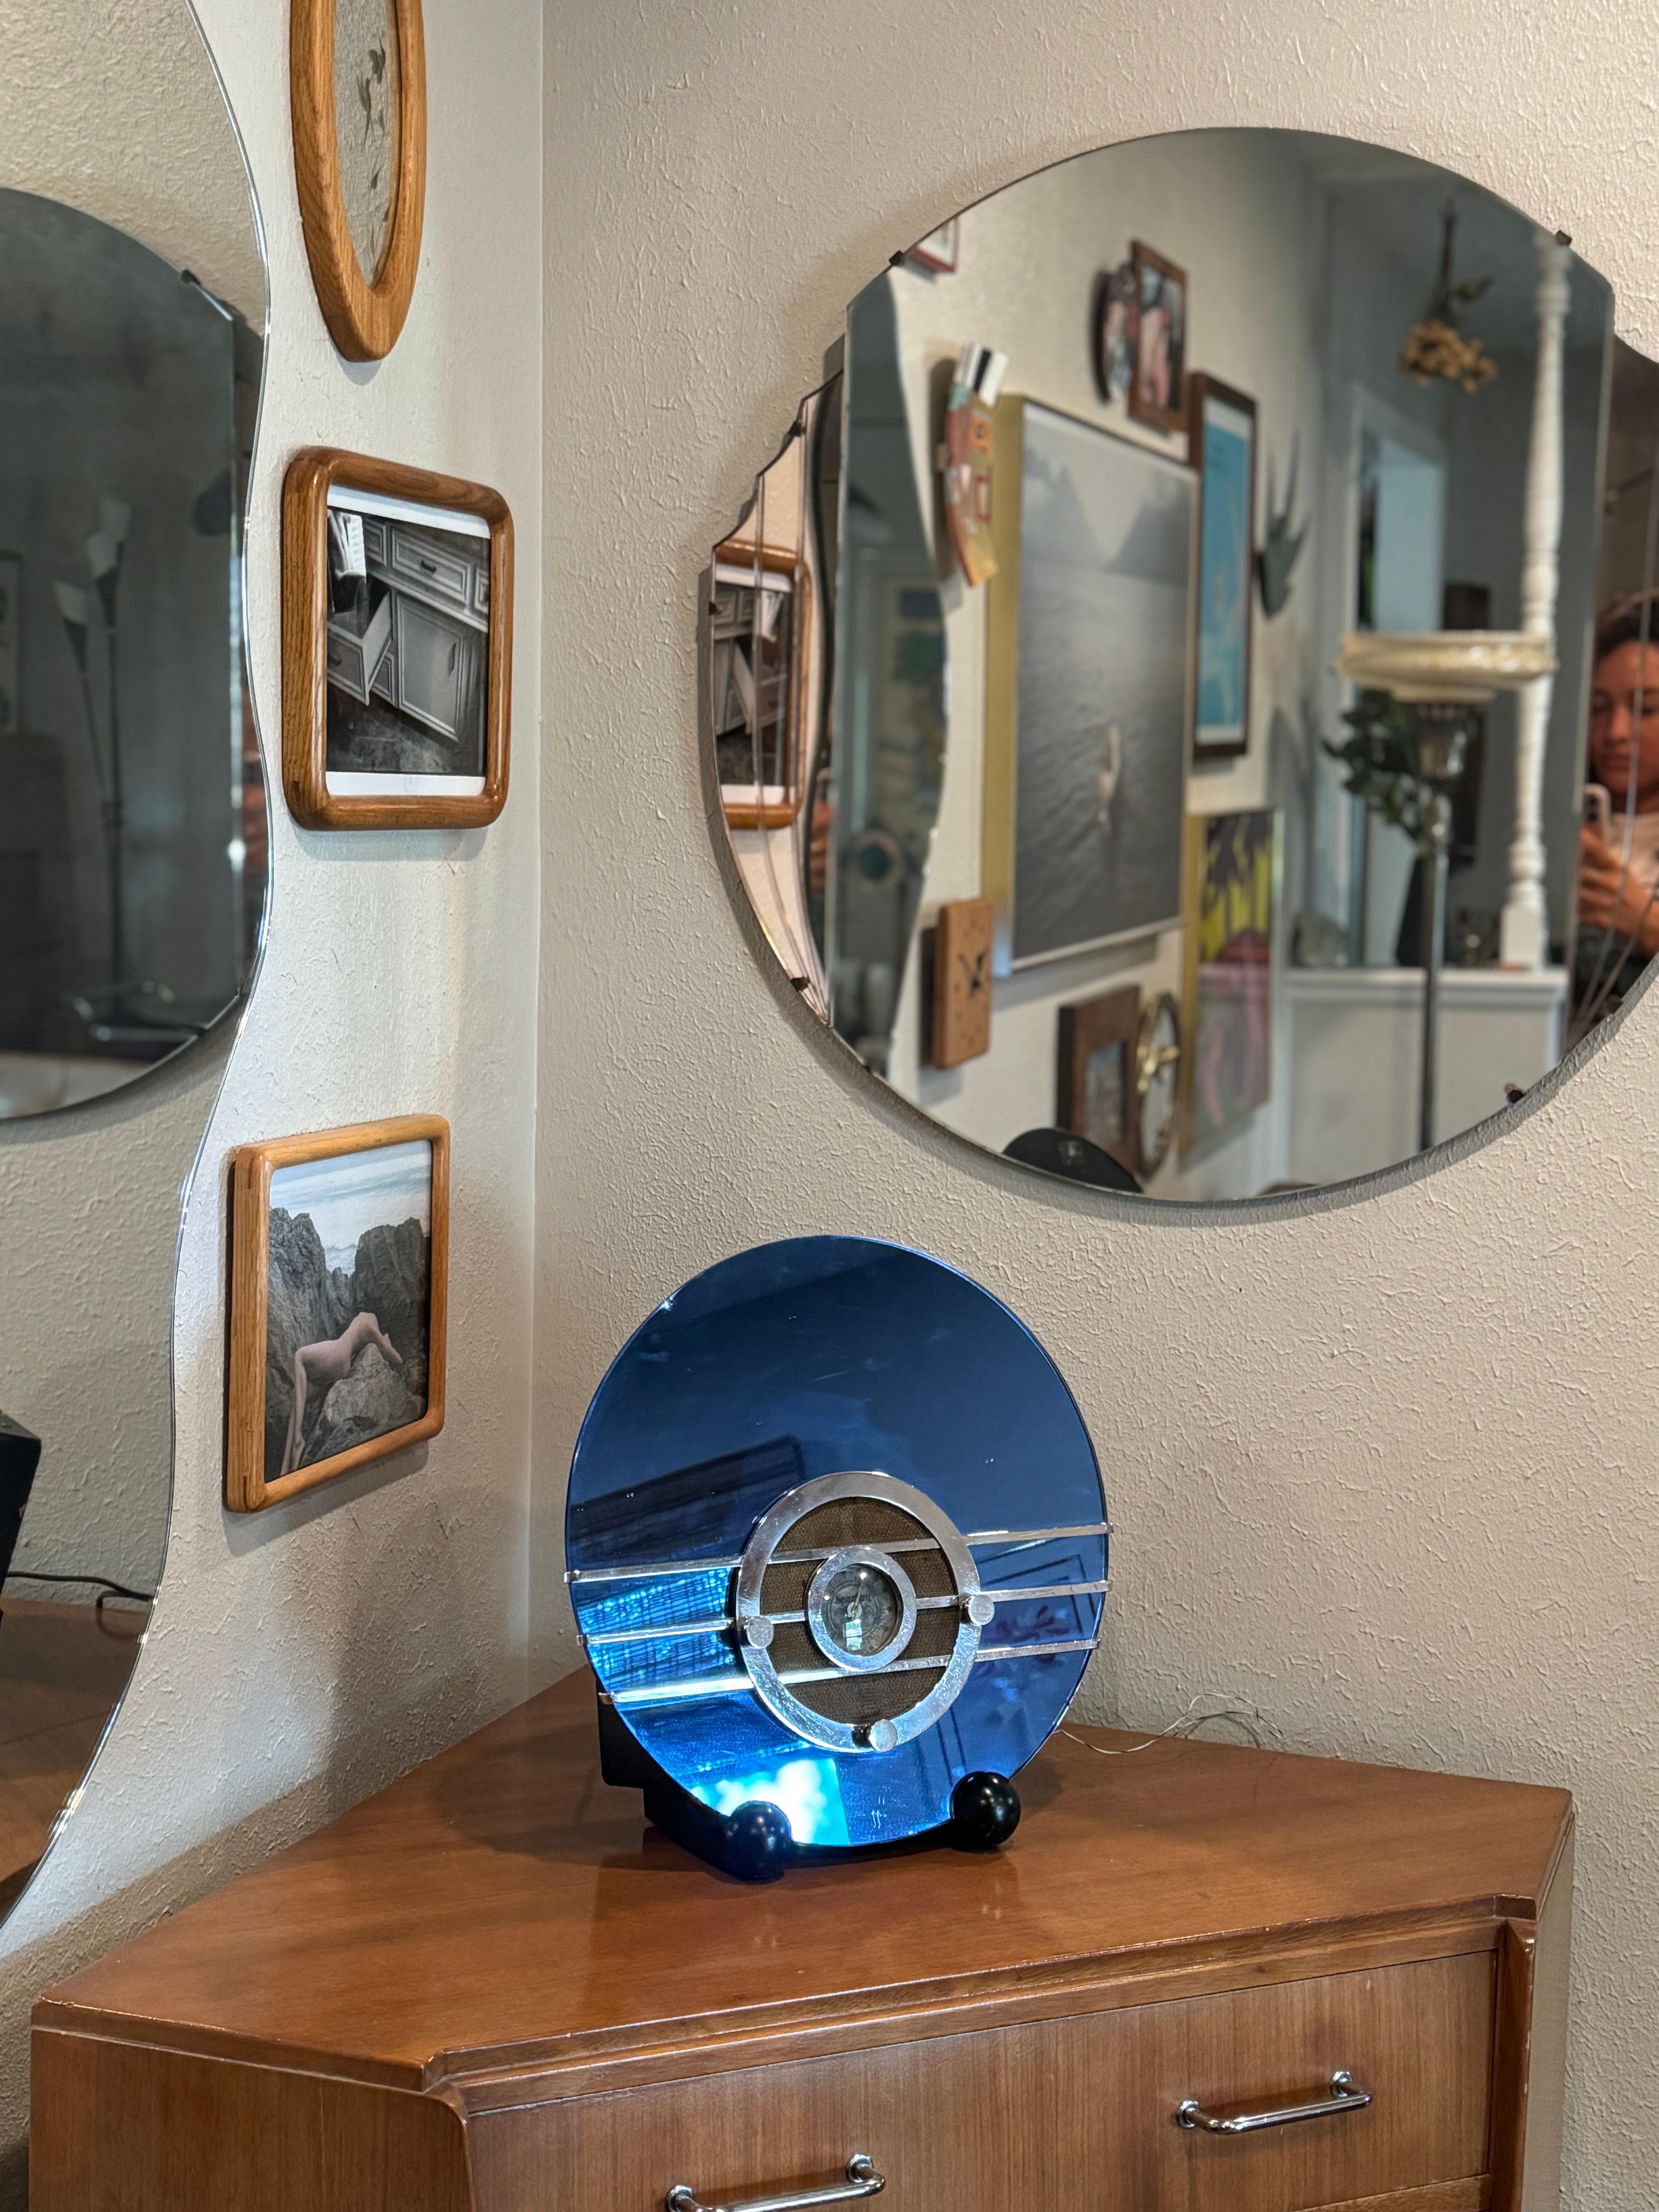 Schönes originales Art Deco Sparton 'Bluebird' kobaltblaues Spiegelradio Modell 566, entworfen von Walter Dorwin Teague für die Sparks-Worthington Company aus Jackson, Michigan im Jahr 1936. Das als 'Bluebird' bekannte Radio gilt als ein großartiges